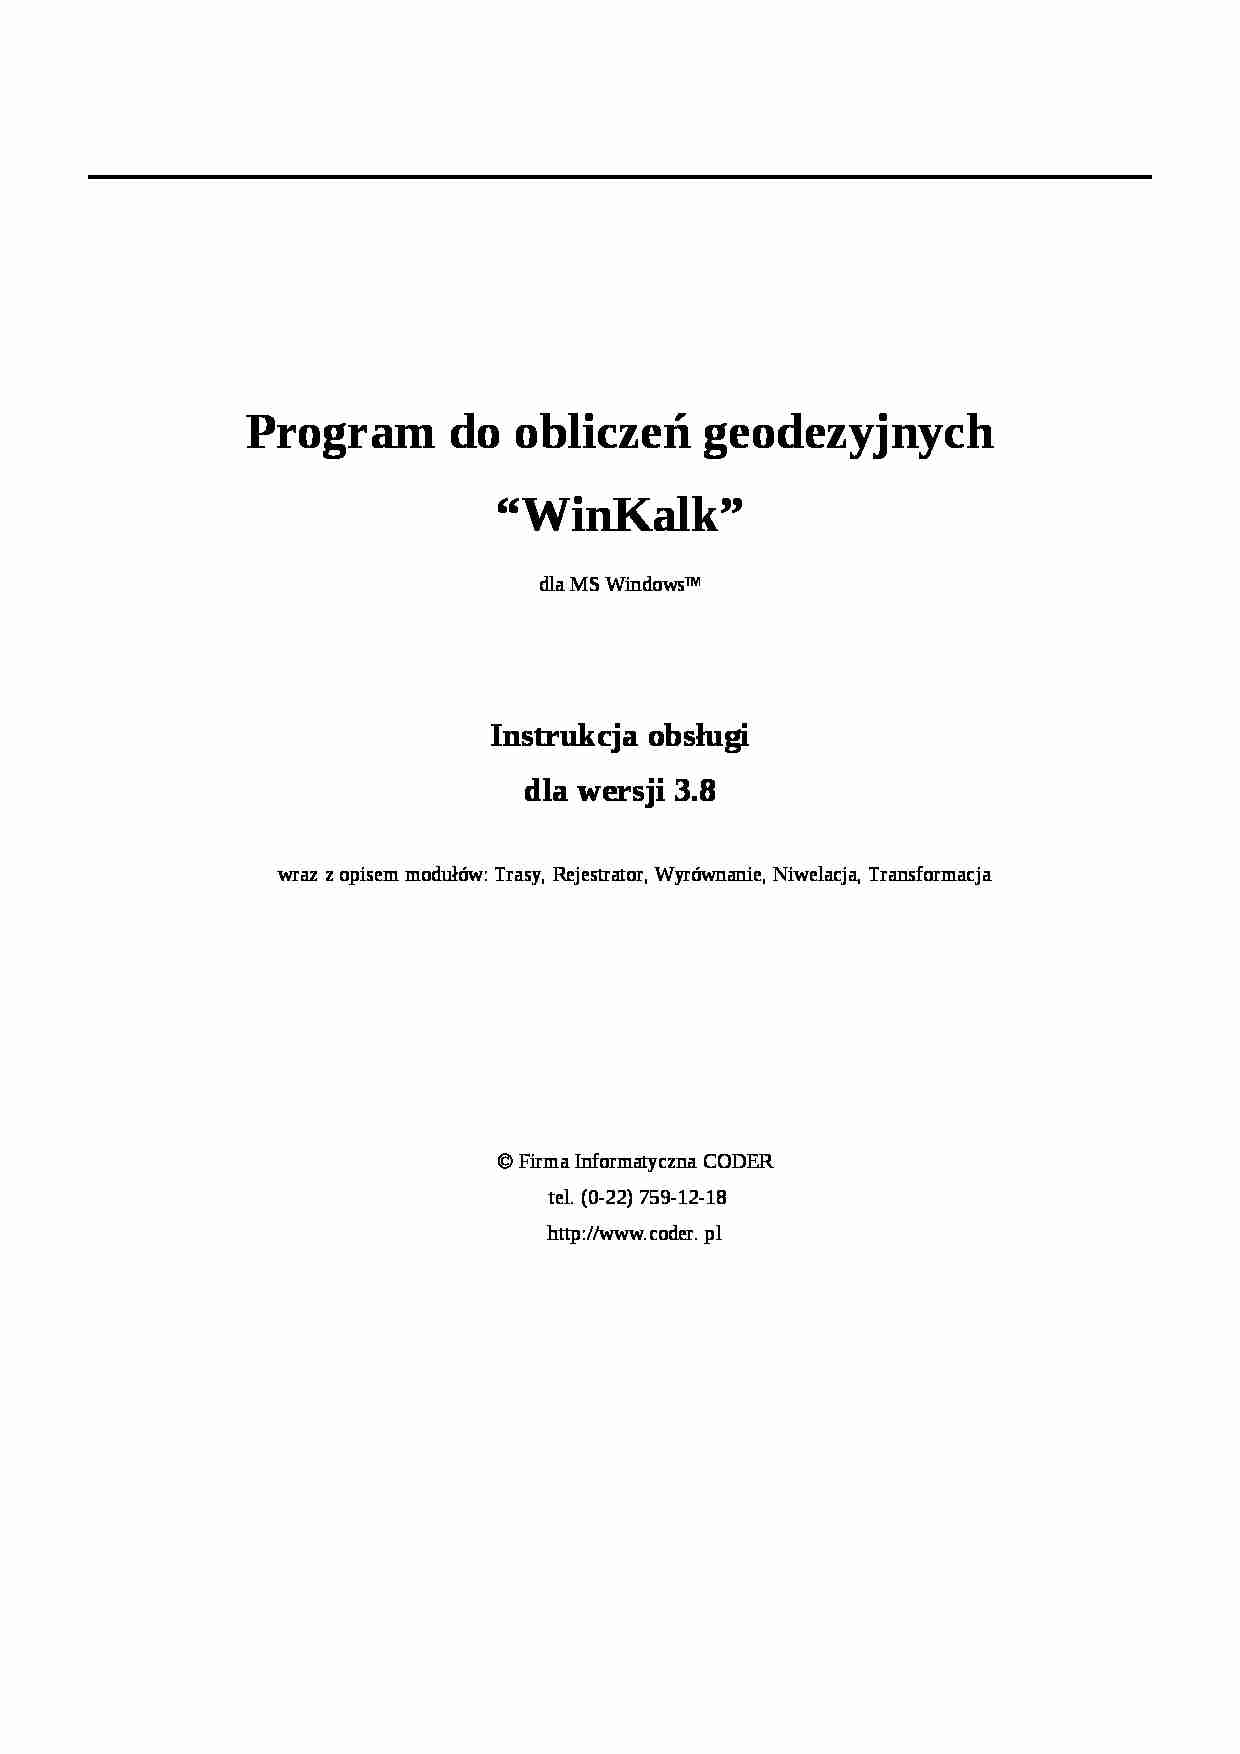 Program do obliczeń geodezyjnych “WinKalk” - strona 1